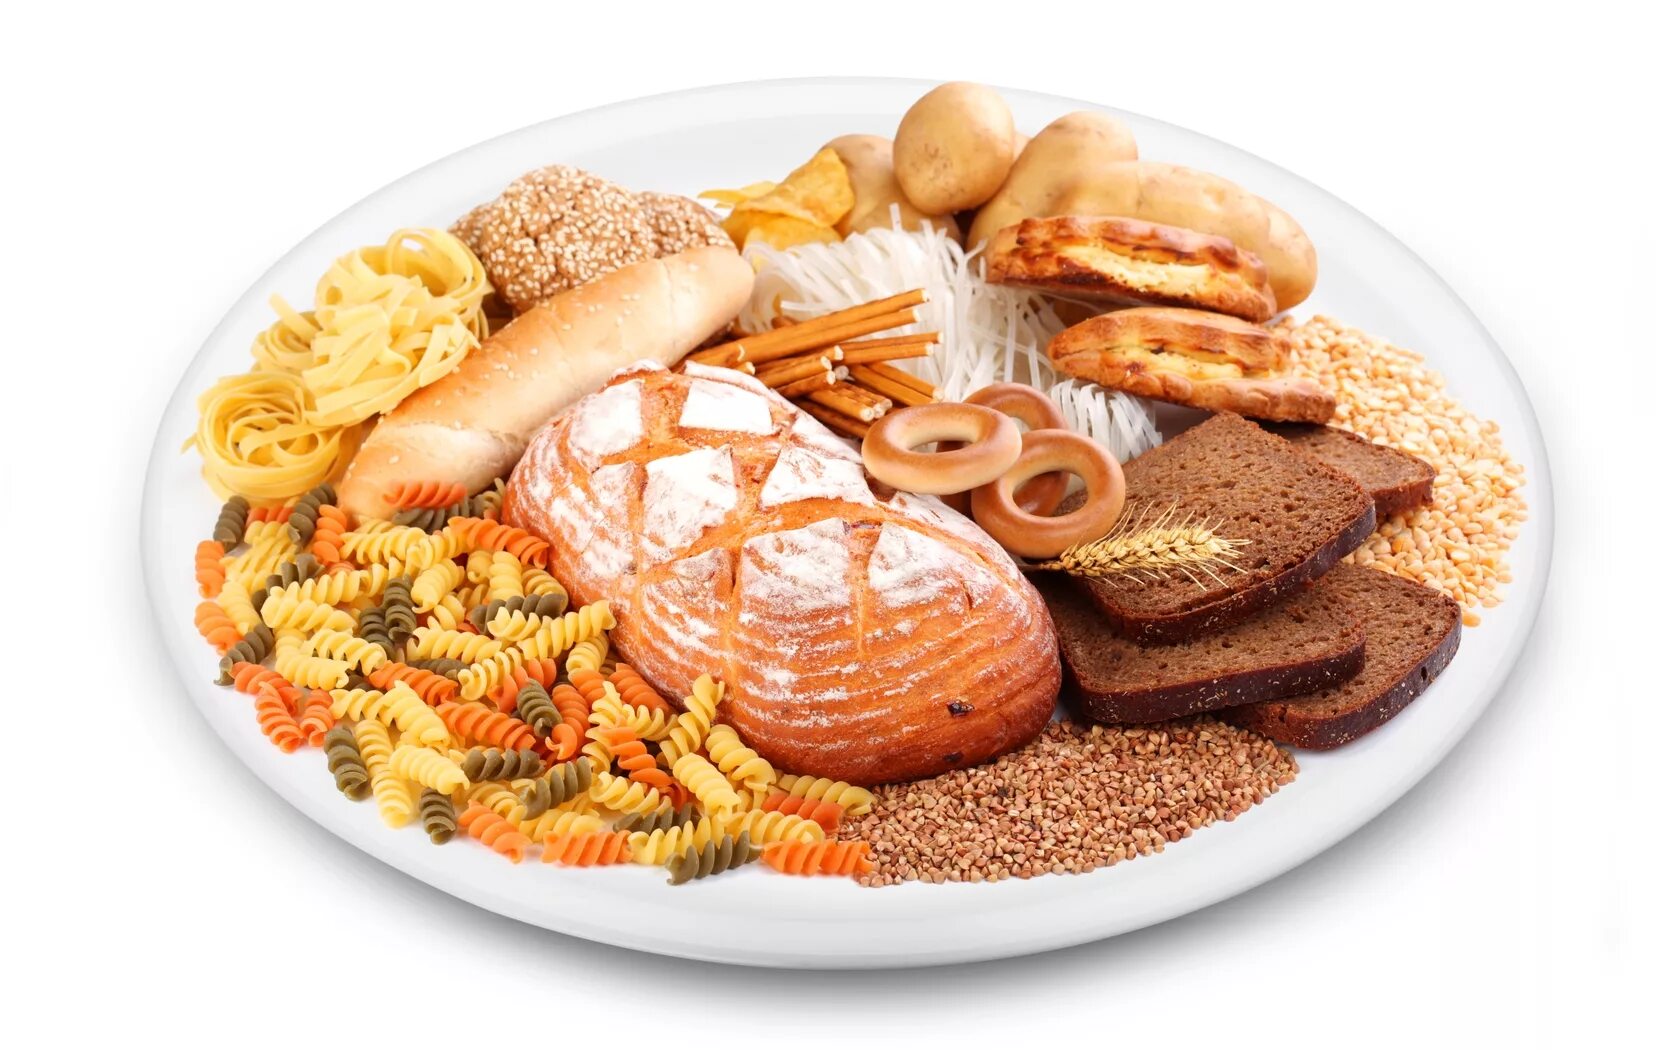 Еду суму. Тарелка с едой. Хлеб макароны крупы. Продукты питания хлеб. Что такое углеводы в продуктах питания.